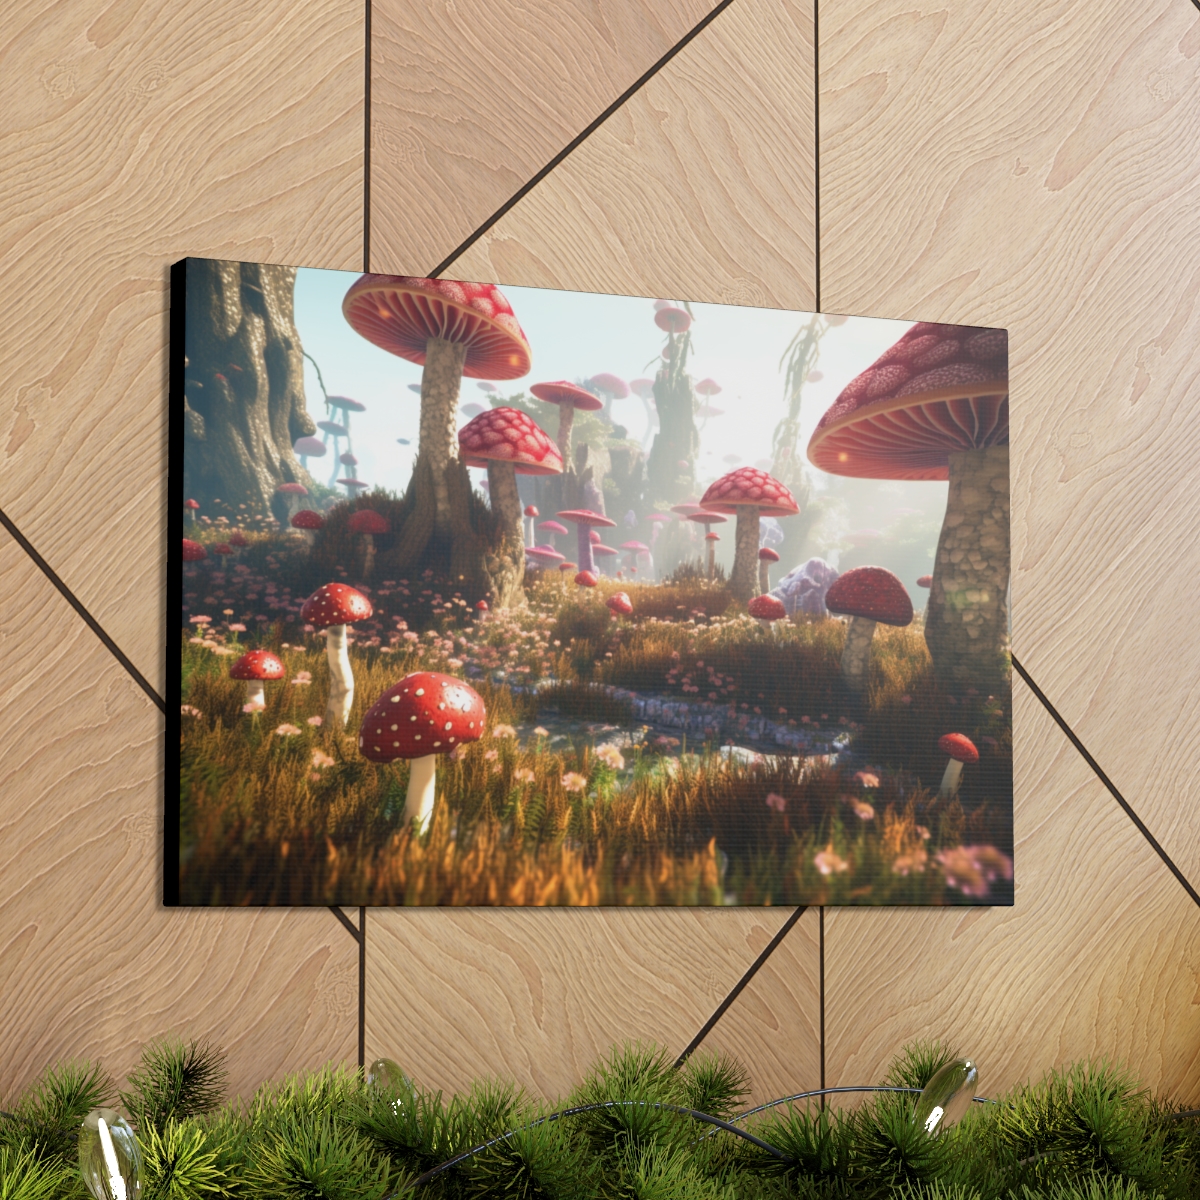 Mushroom Art Canvas Print: Shroom Wonderland